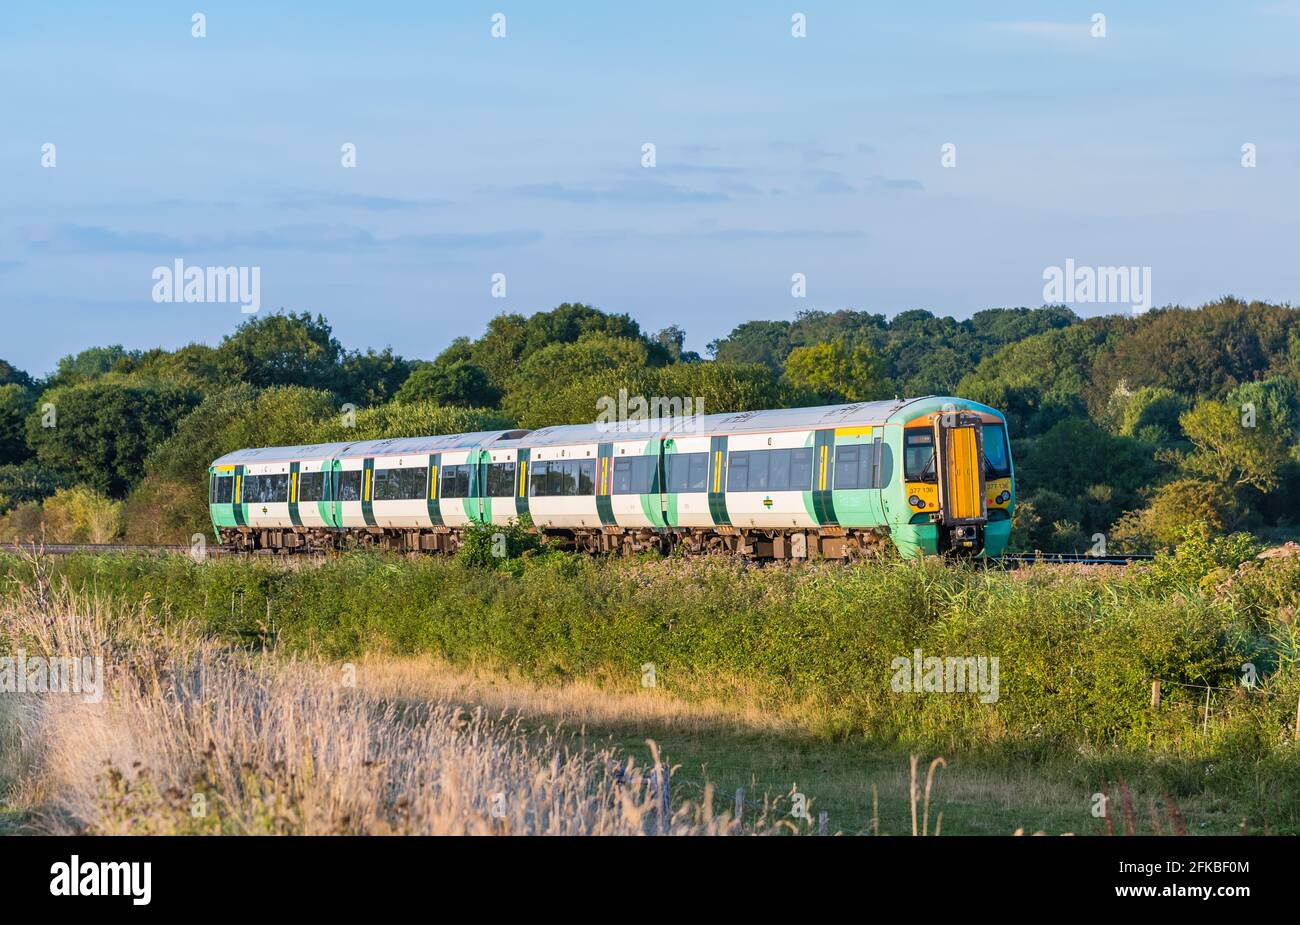 Southern Rail Class 377 Electrostar train roulant à travers la campagne dans les South Downs de la vallée d'Arun dans West Sussex, Royaume-Uni. Banque D'Images